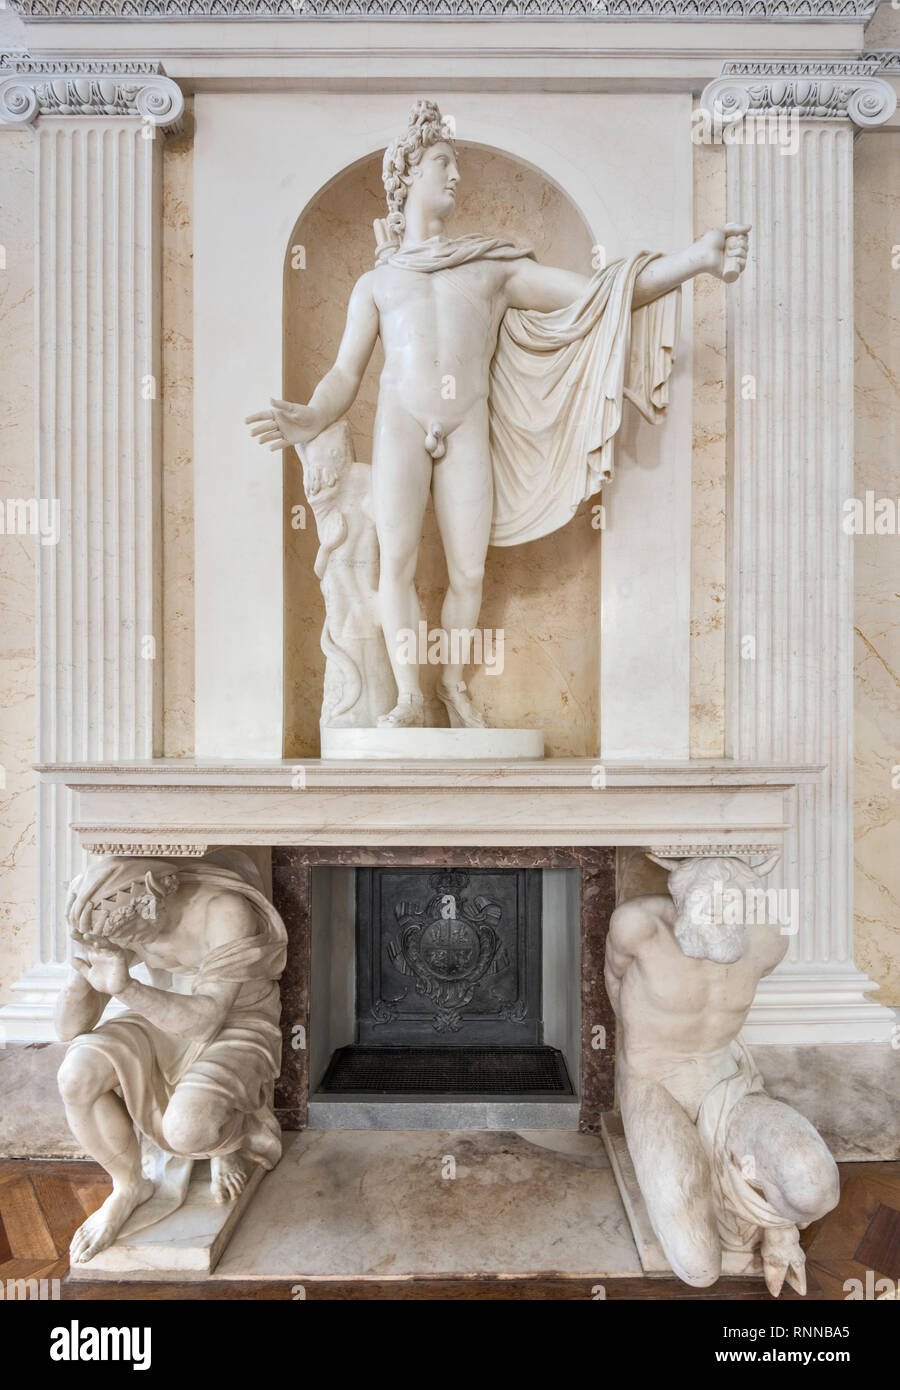 Apollo Belvedere, sculpture d'Antonio d'Este, statues de Satyr Marsyas et roi Midas, salle de bal, Palais sur l'eau, parc Lazienki à Varsovie, Pologne Banque D'Images